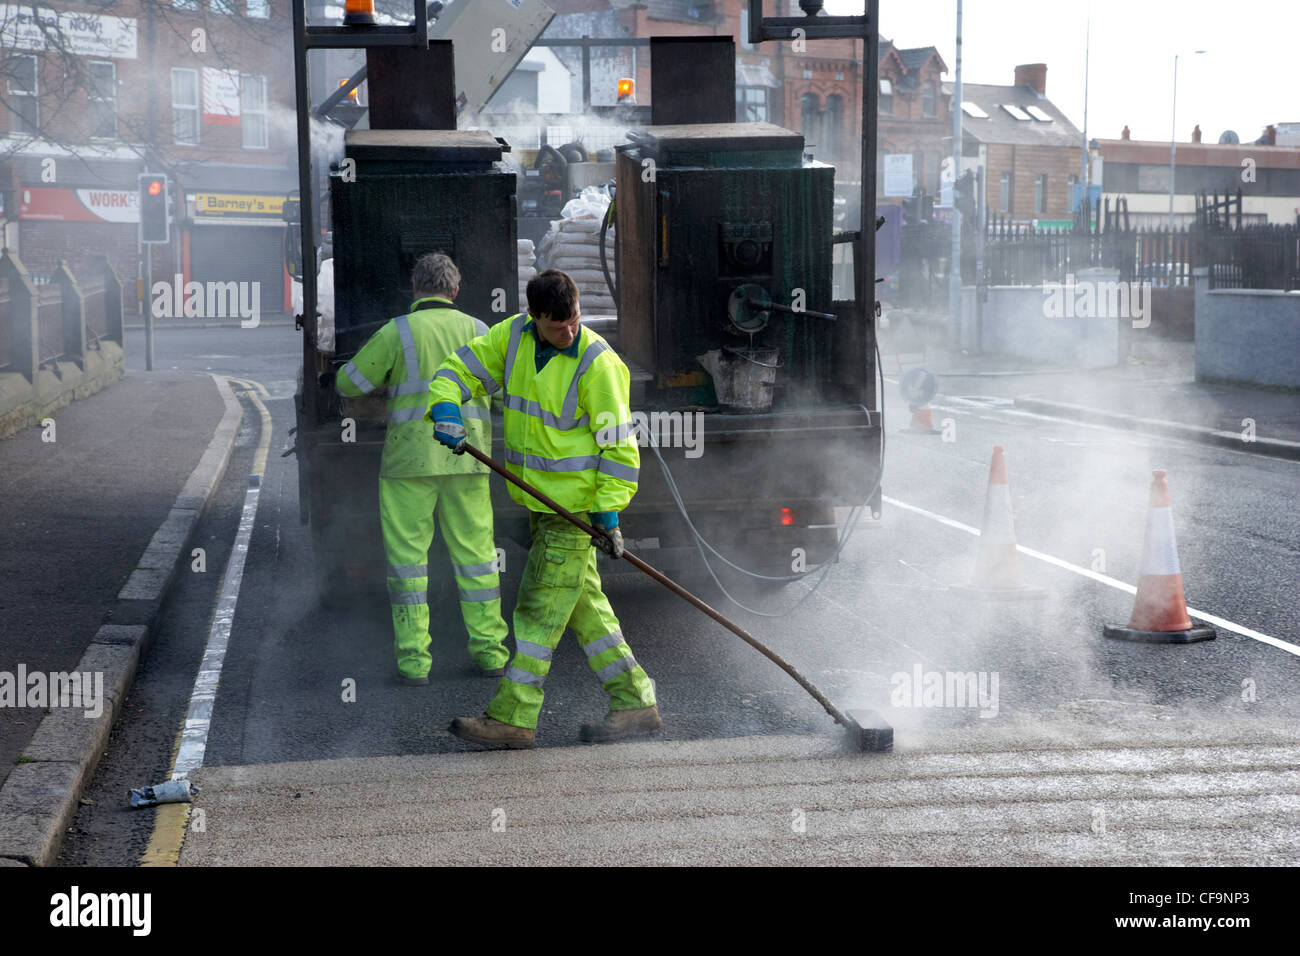 Les travailleurs de la construction routière appliquée à chaud de l'installation de revêtement routier de frottement élevé Royaume-Uni Irlande du Nord Belfast Banque D'Images